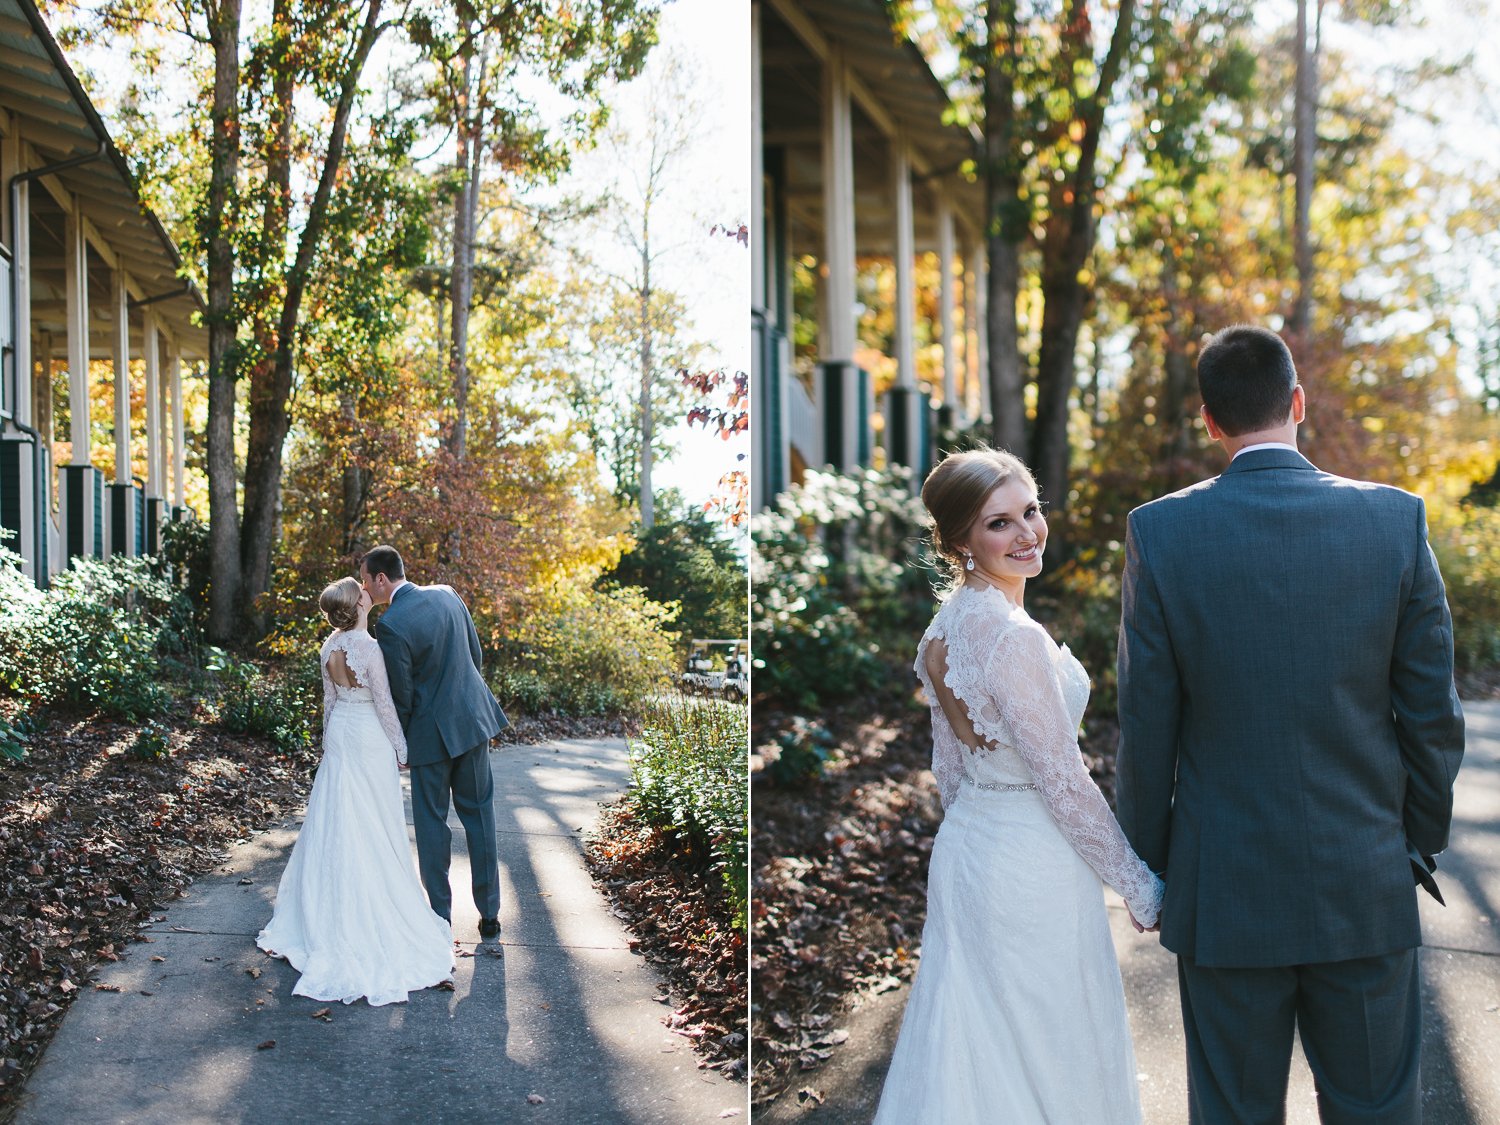 Bride and groom holding hands walking down sidewalk